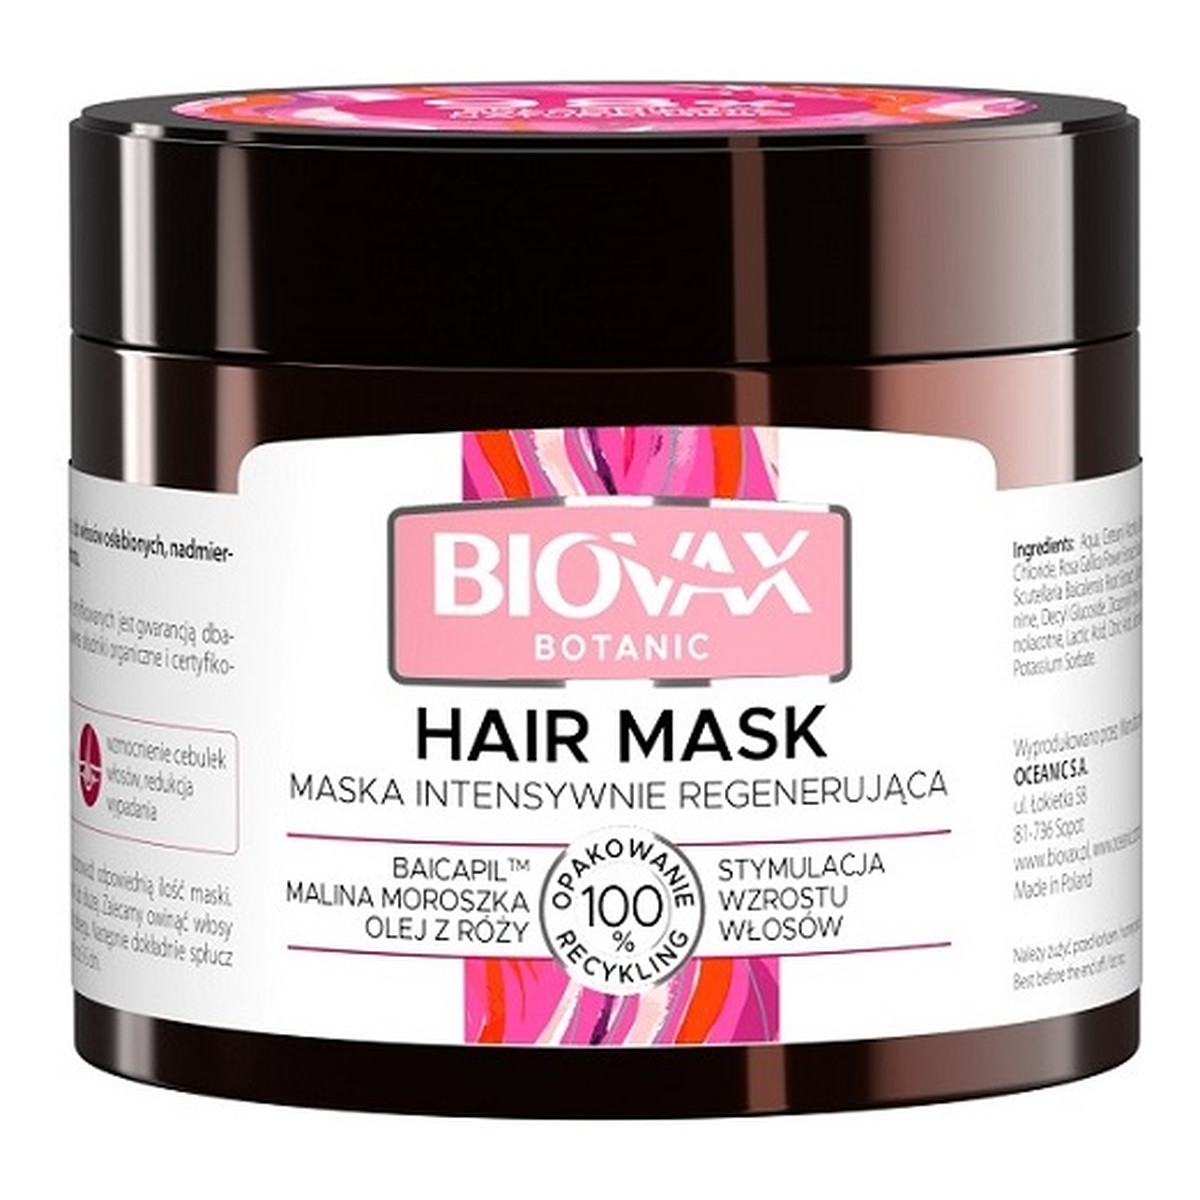 Biovax Botanic Maska do włosów intensywnie regenerująca - Malina Moroszka, Baicapil, Olej z Róży 250ml